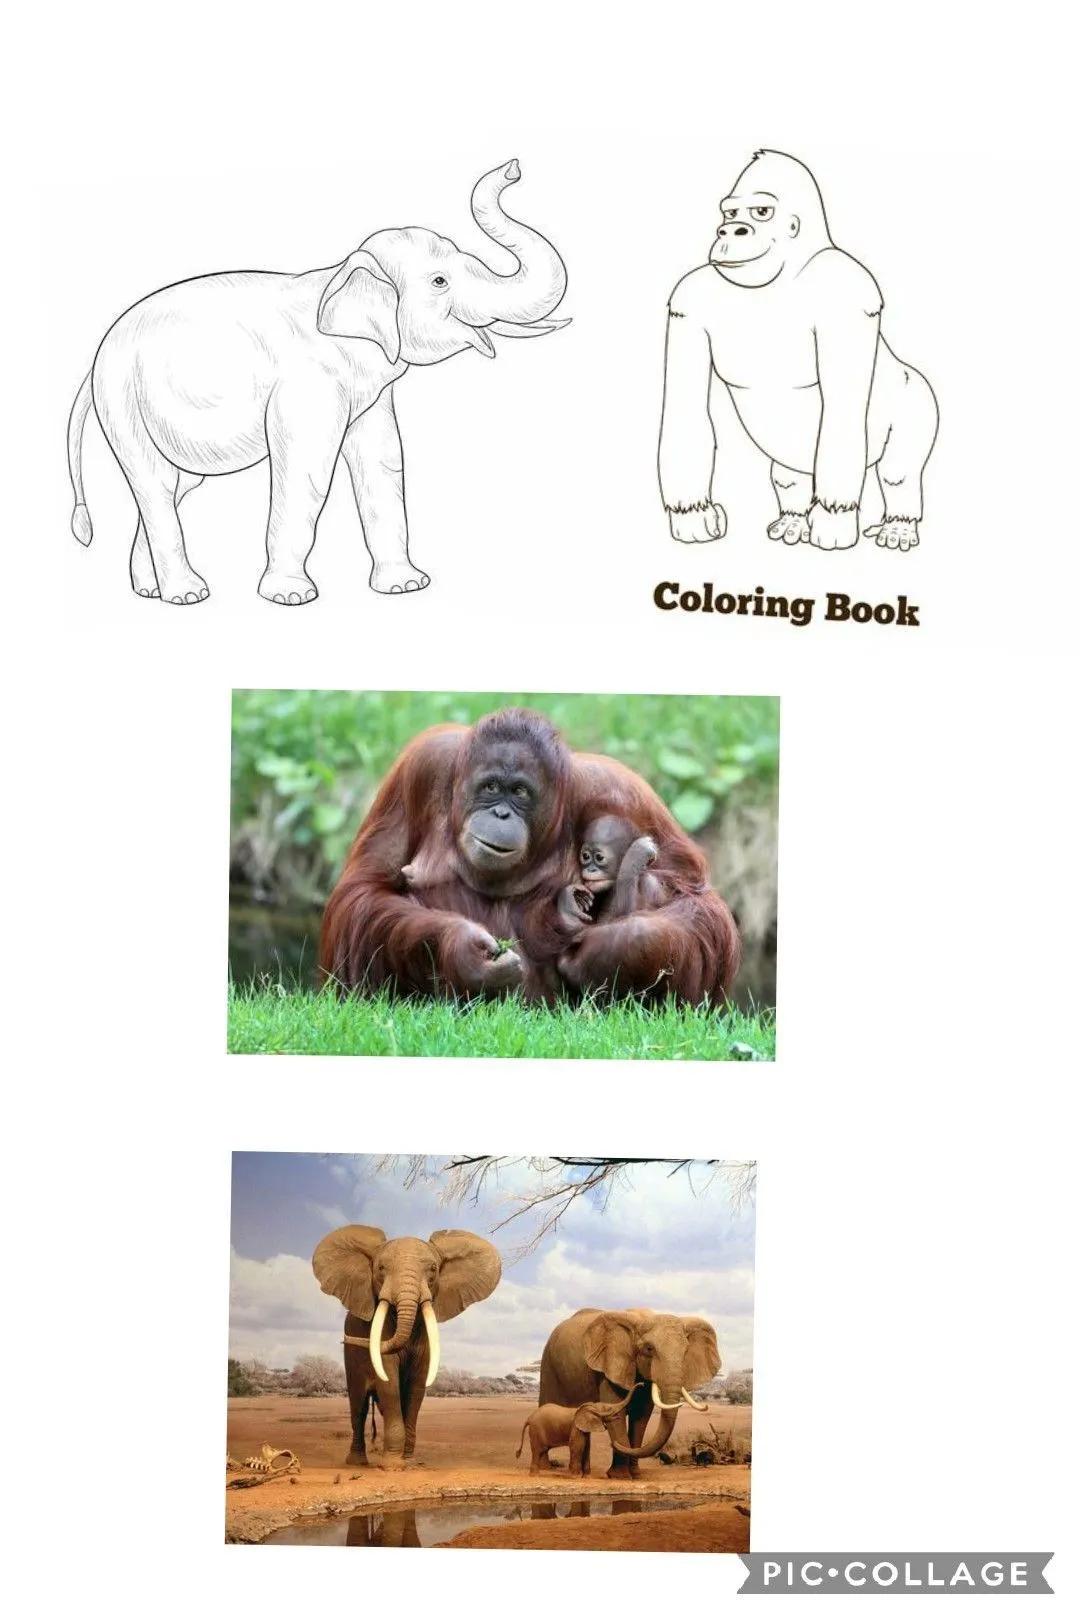 Pin by Ana Po on Animales y animales en peligro de extinción | Coloring  books, Poster, Movie posters